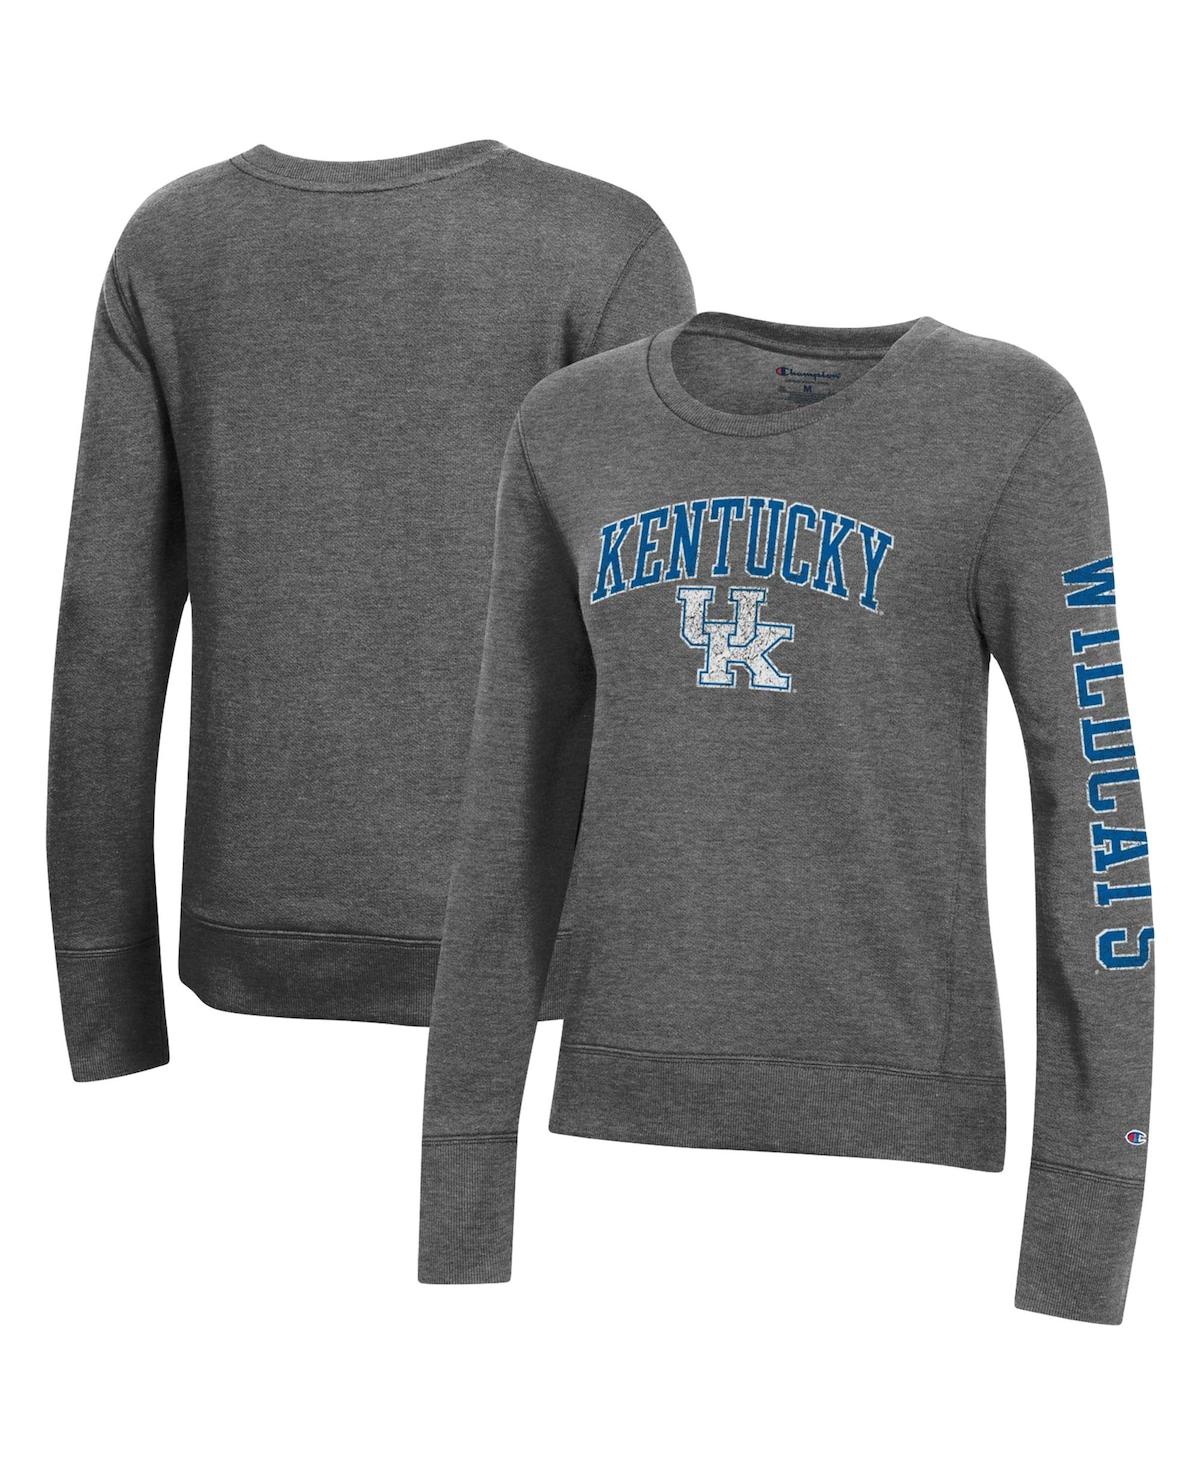 Champion Women's  Heathered Charcoal Kentucky Wildcats University 2.0 Fleece Sweatshirt